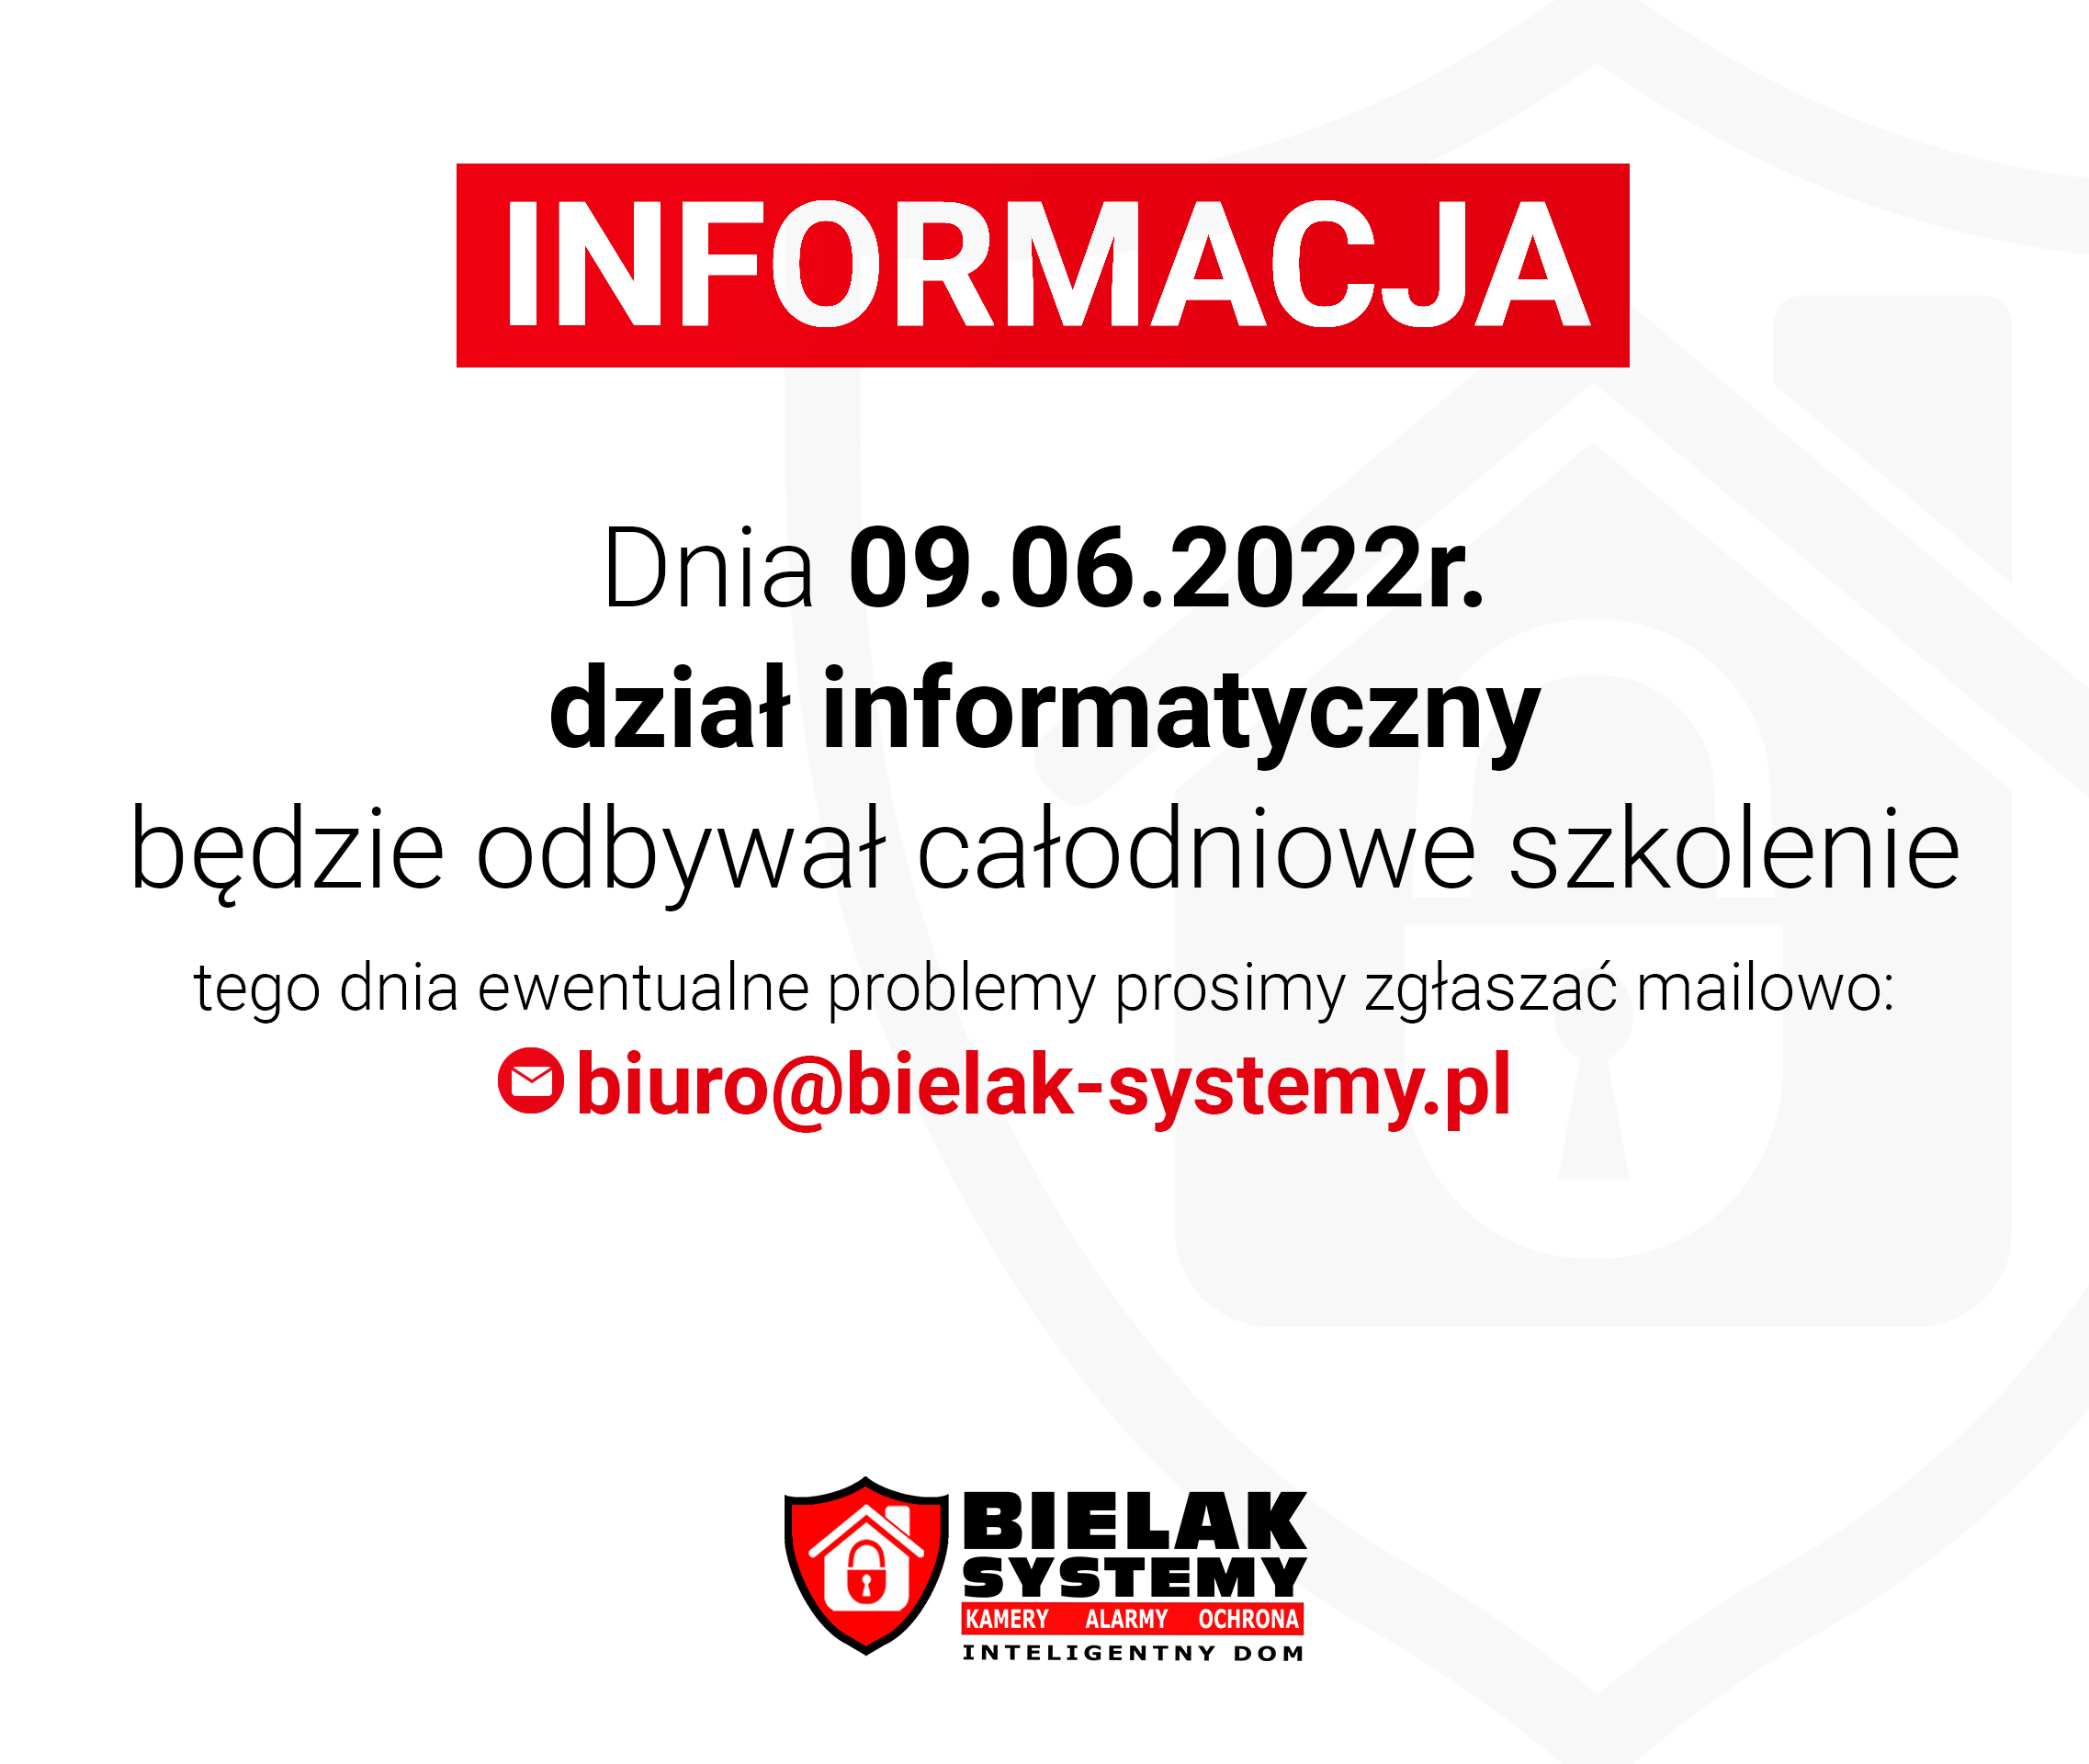 Dnia 09.06 dział informatyczny będzie odbywał całodniowe szkolenie. Tego dnia wszelkie problemy prosimy zgłaszać mailowo - biuro@bielak-systemy.pl